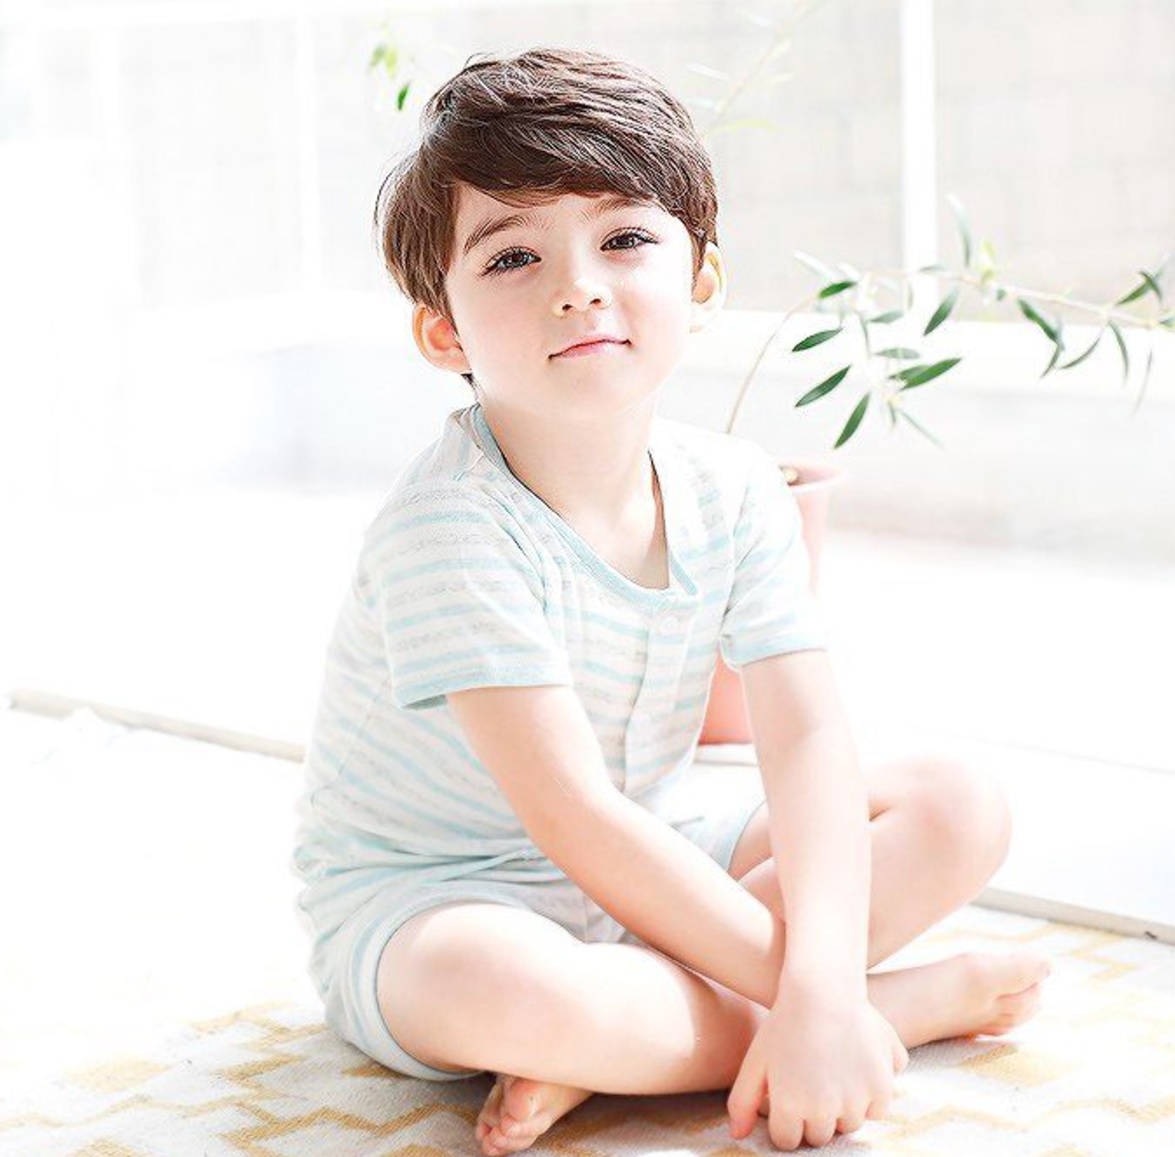 Cooper - Cậu bé 4 tuổi được mệnh danh đẹp trai nhất thế giới